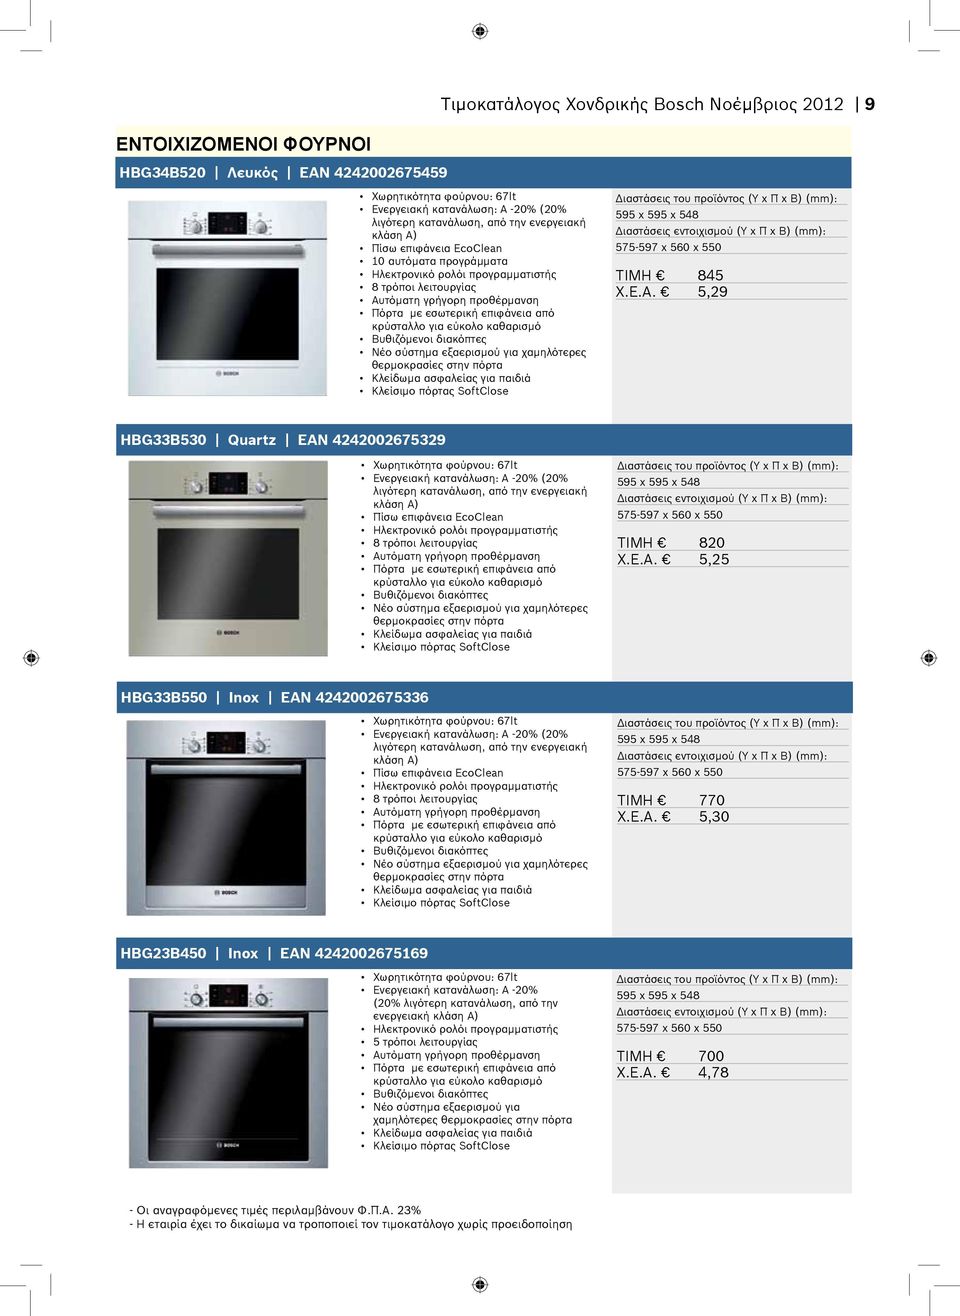 εύκολο καθαρισμό Βυθιζόμενοι διακόπτες Νέο σύστημα εξαερισμού για χαμηλότερες θερμοκρασίες στην πόρτα Κλείσιμο πόρτας SoftClose 595 x 595 x 548 575-597 x 560 x 550 TIMH 845 X.E.A.